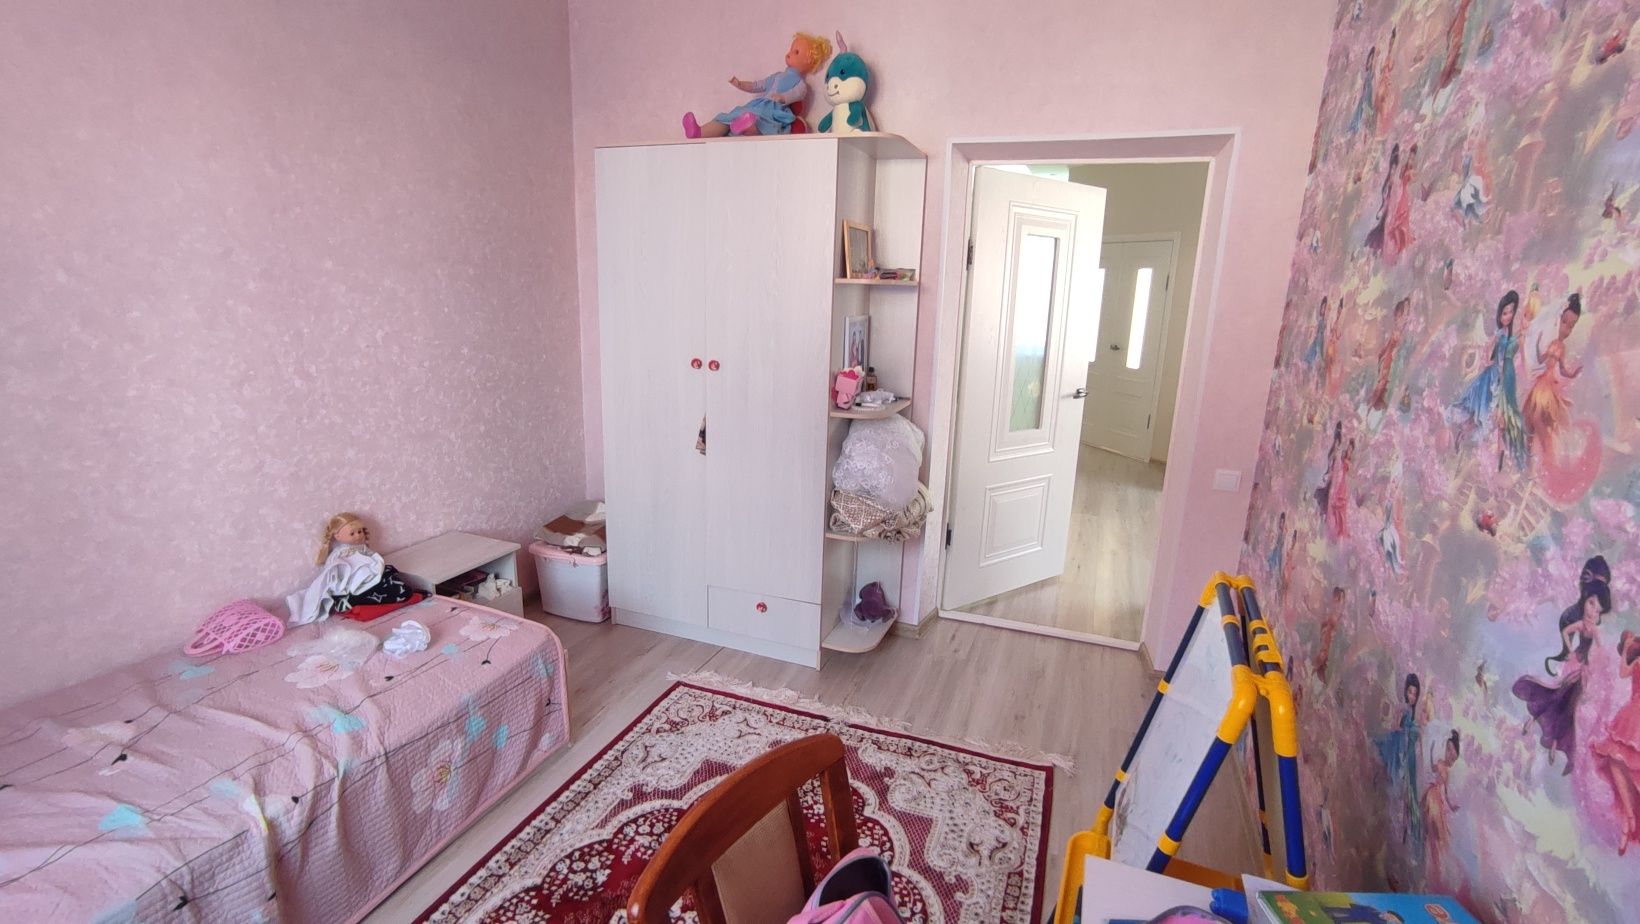 Продается дом в Село Жамбыл Алматинской области